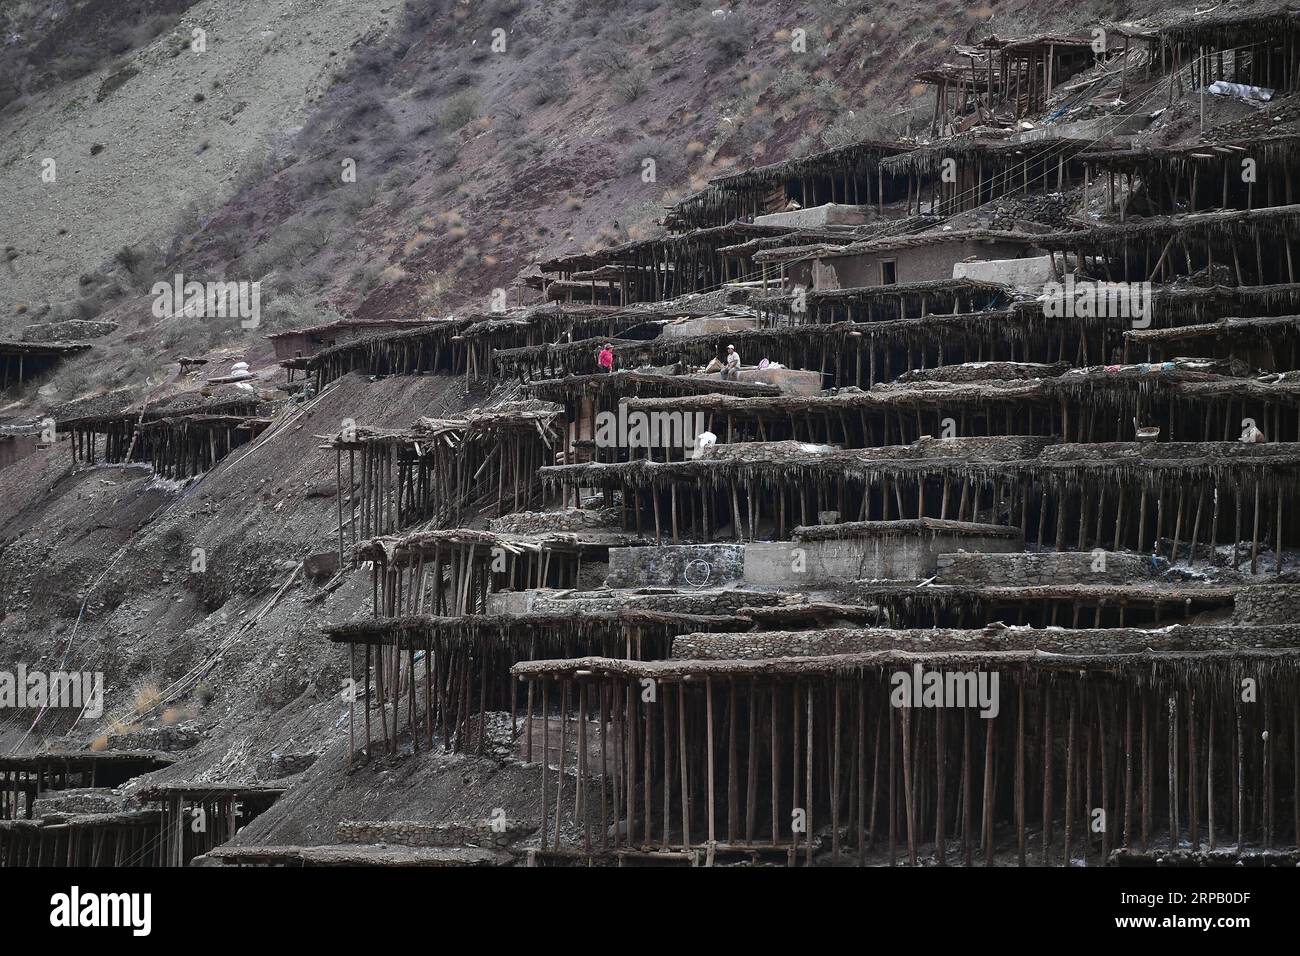 (190523) -- LHASA, 23 maggio 2019 (Xinhua) -- gli abitanti del villaggio lavorano in campi salini nella contea di Mangkam, nella regione autonoma del Tibet del sud-ovest della Cina, 22 maggio 2019. Un'antica tecnica di produzione del sale fin dalla dinastia Tang (618-907) è ben conservata nella contea di Mangkam. La popolazione locale segue un metodo di raccolta del sale raccogliendo salamoie dalle miniere di sale e dagli stagni e facendole evaporare al sole fino alla cristallizzazione. (Xinhua/li Xin) CHINA-TIBET-MANGKAM-SALT PRODUCTION (CN) PUBLICATIONxNOTxINxCHN Foto Stock